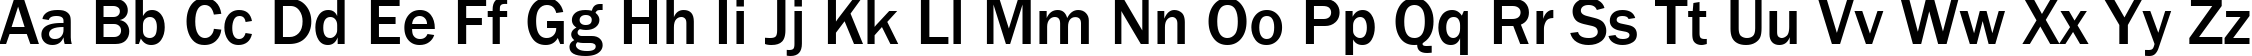 Пример написания английского алфавита шрифтом font157